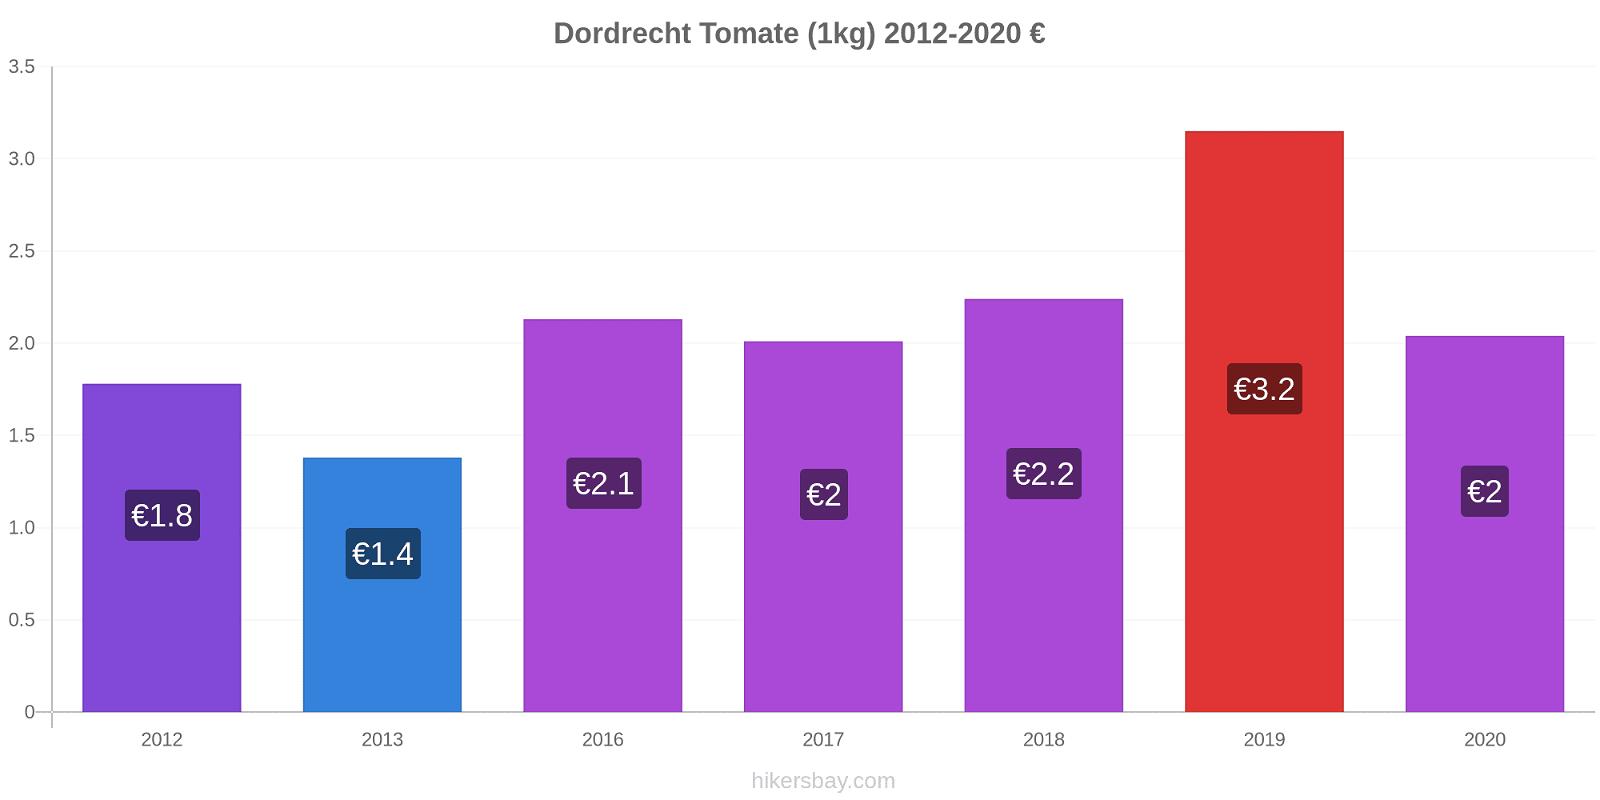 Dordrecht changements de prix Tomate (1kg) hikersbay.com